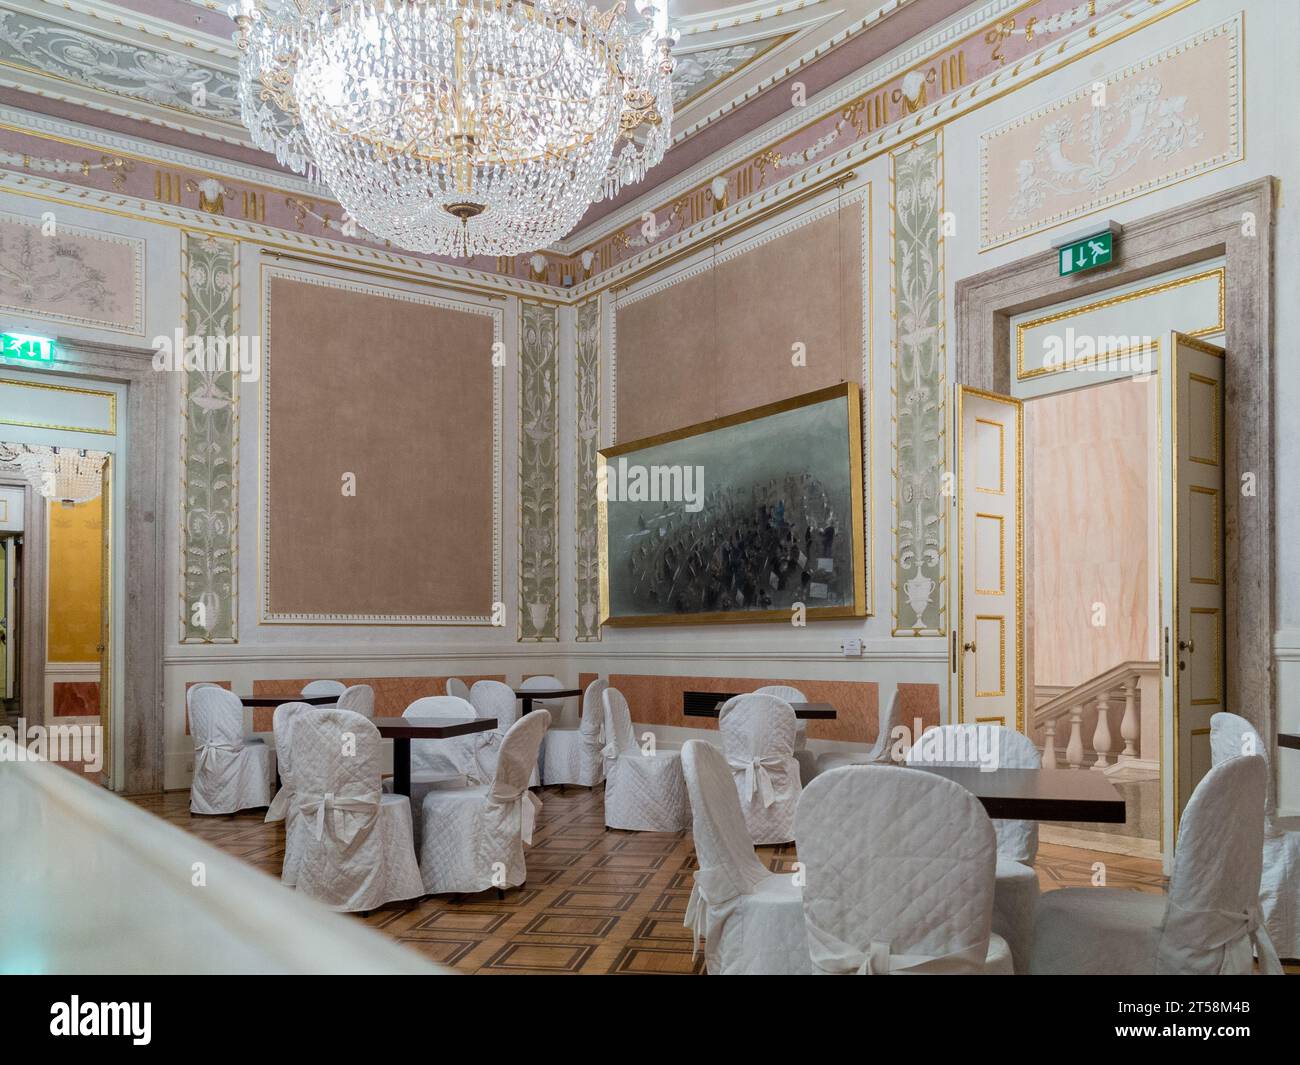 Salle de réception au théâtre la Fenice à Venise, Italie. Des chaises enveloppées de tissu entourent les tables. Banque D'Images